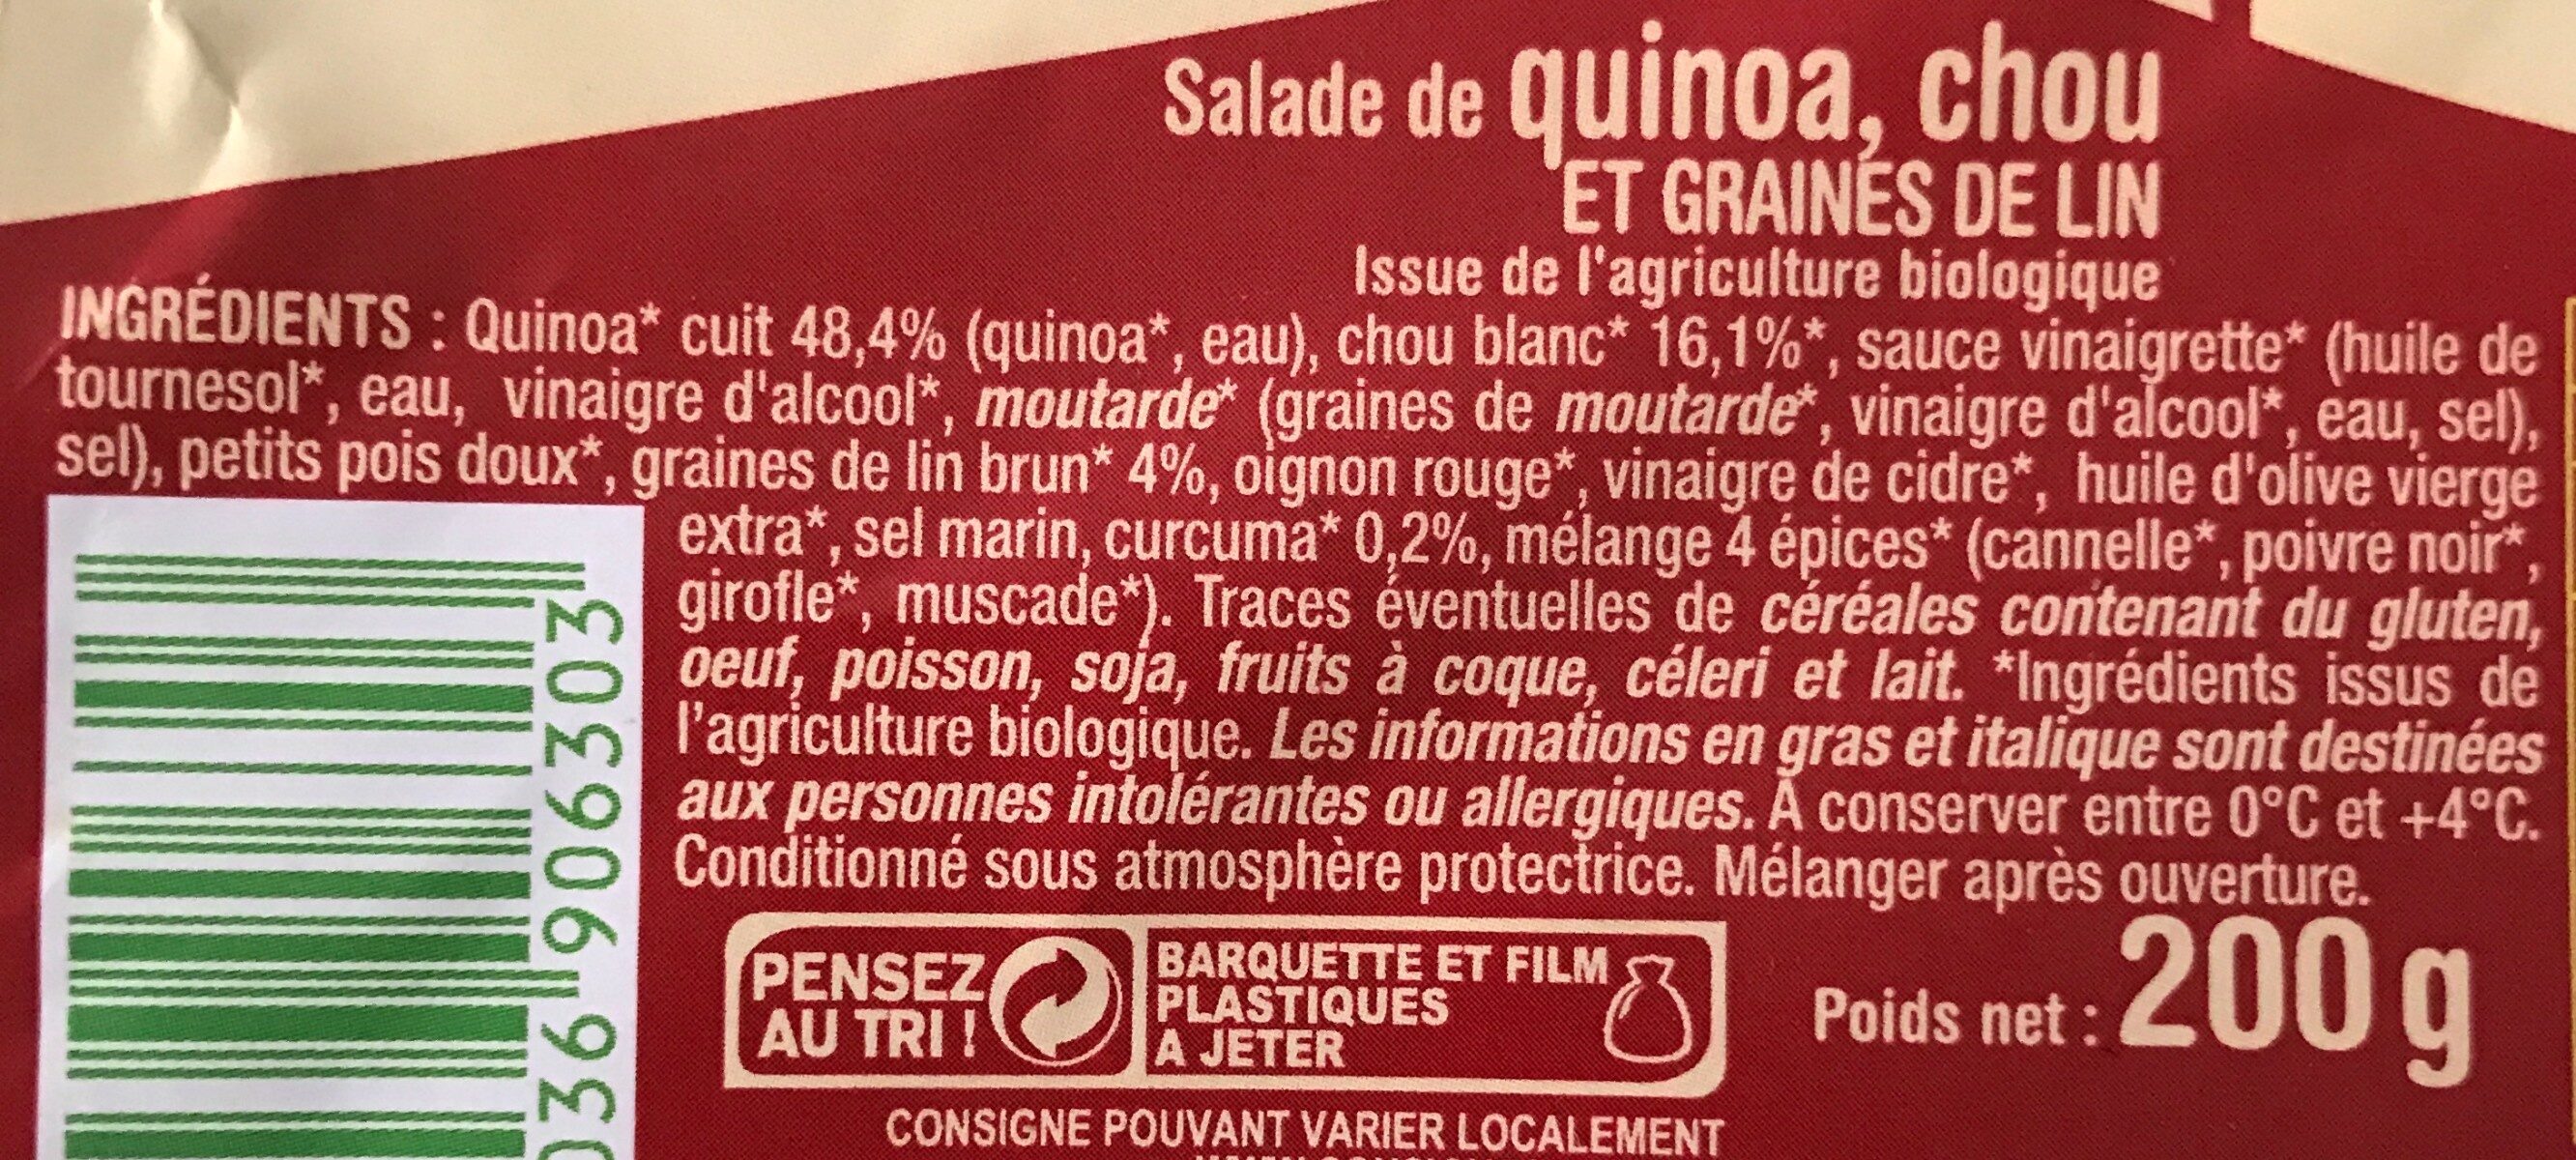 Salade de quinoa, chou et graines de lin - Producto - fr